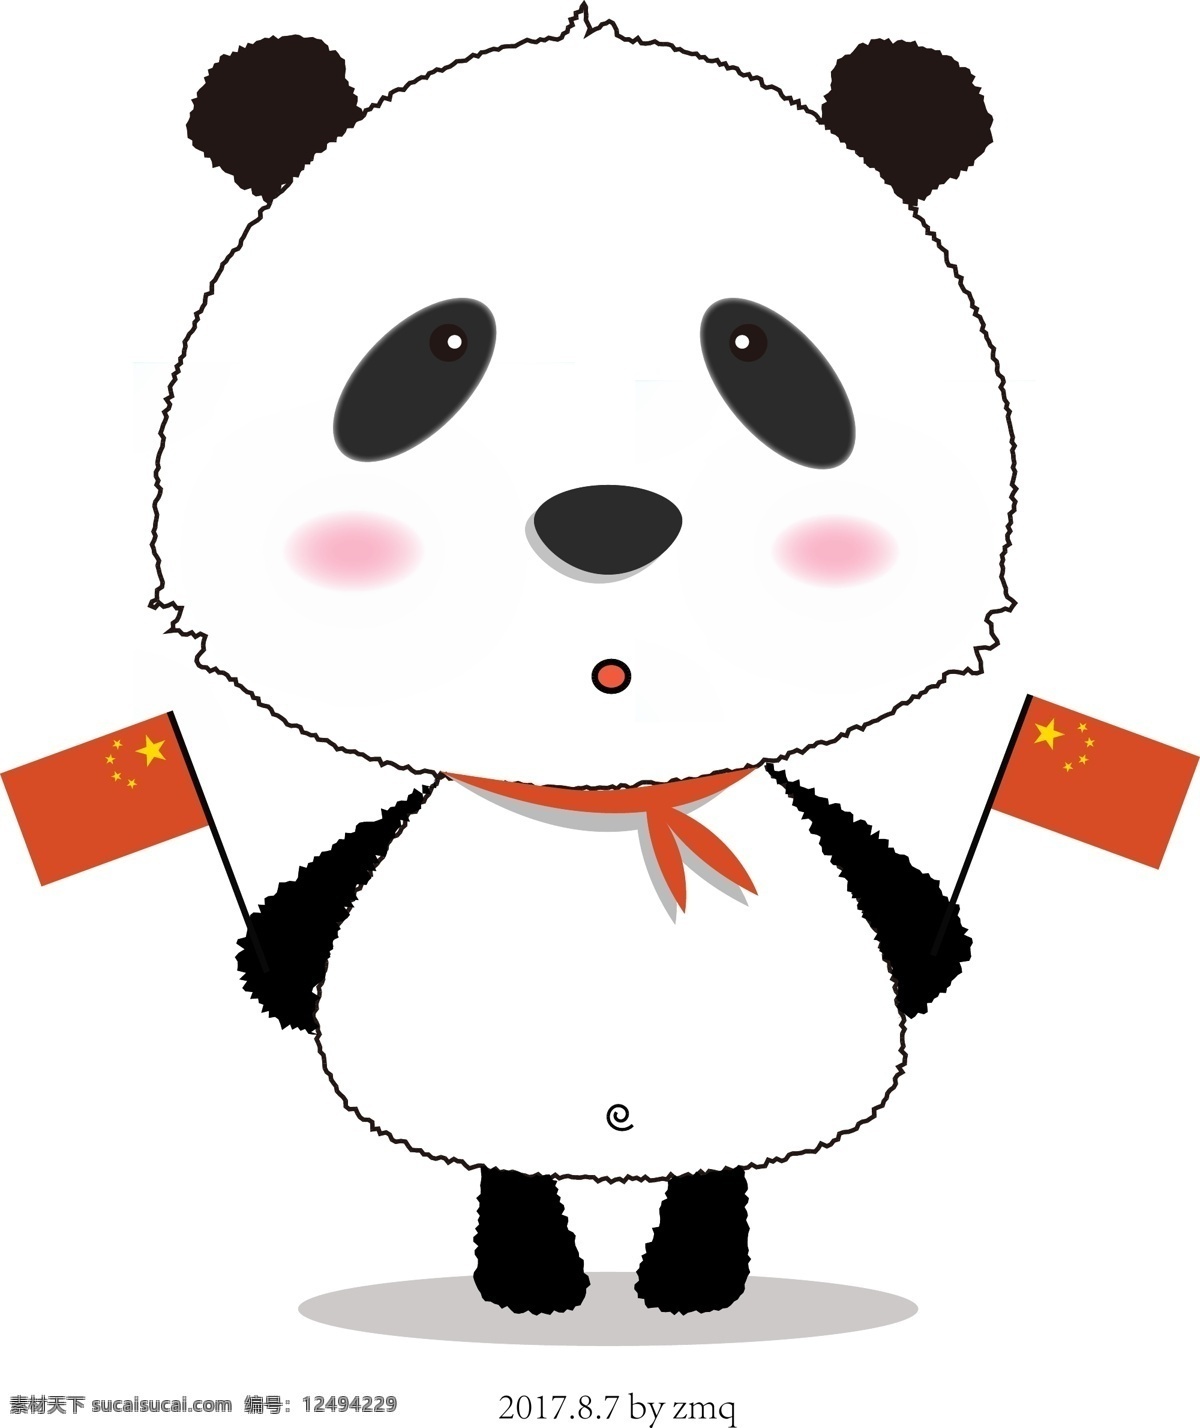 爱国熊猫 熊猫 卡通 爱国 国旗 矢量图 可爱 动物 动漫动画 动漫人物